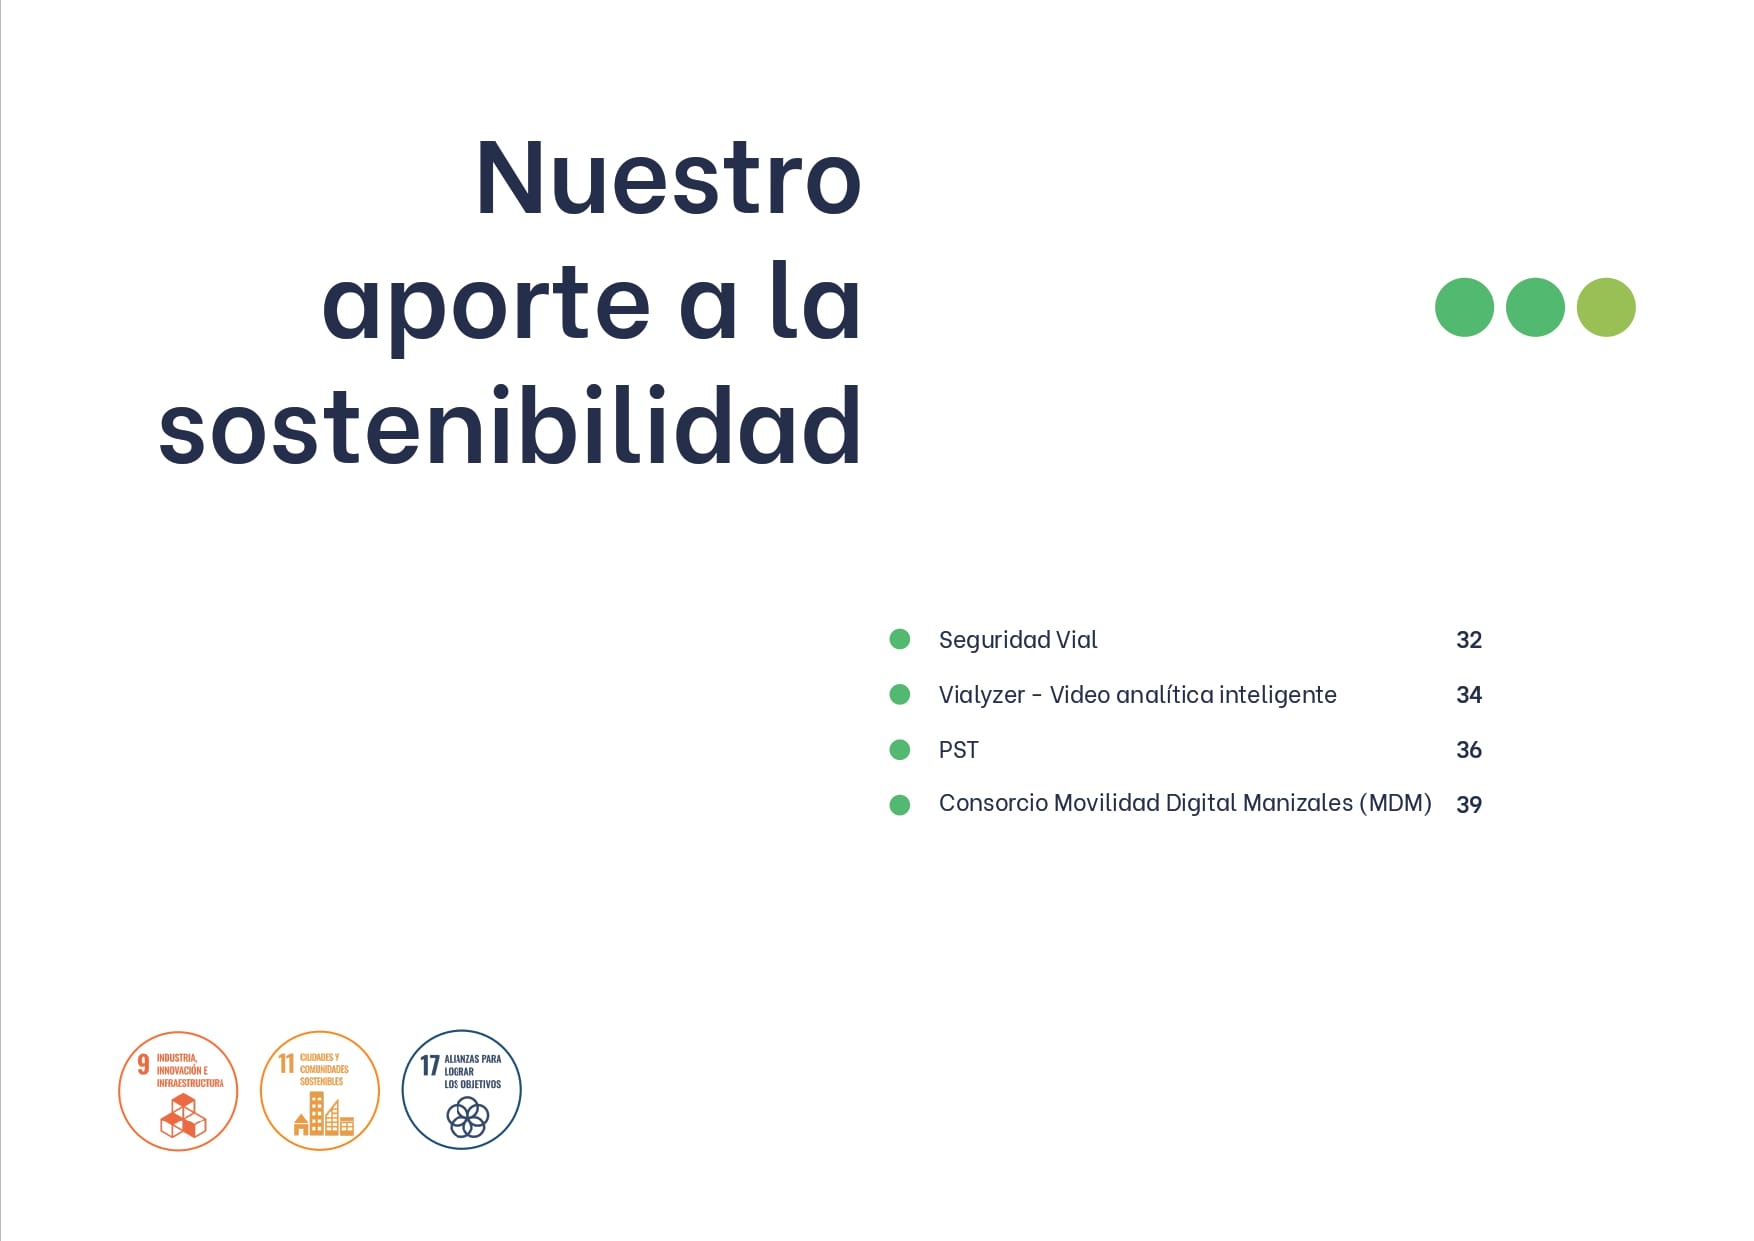 Diapositiva titulada "Te presentamos los puntos más relevantes de nuestra gestión durante el año 2023" en español, que presenta una lista de proyectos de sostenibilidad con tres viñetas e íconos para las categorías de proyectos.